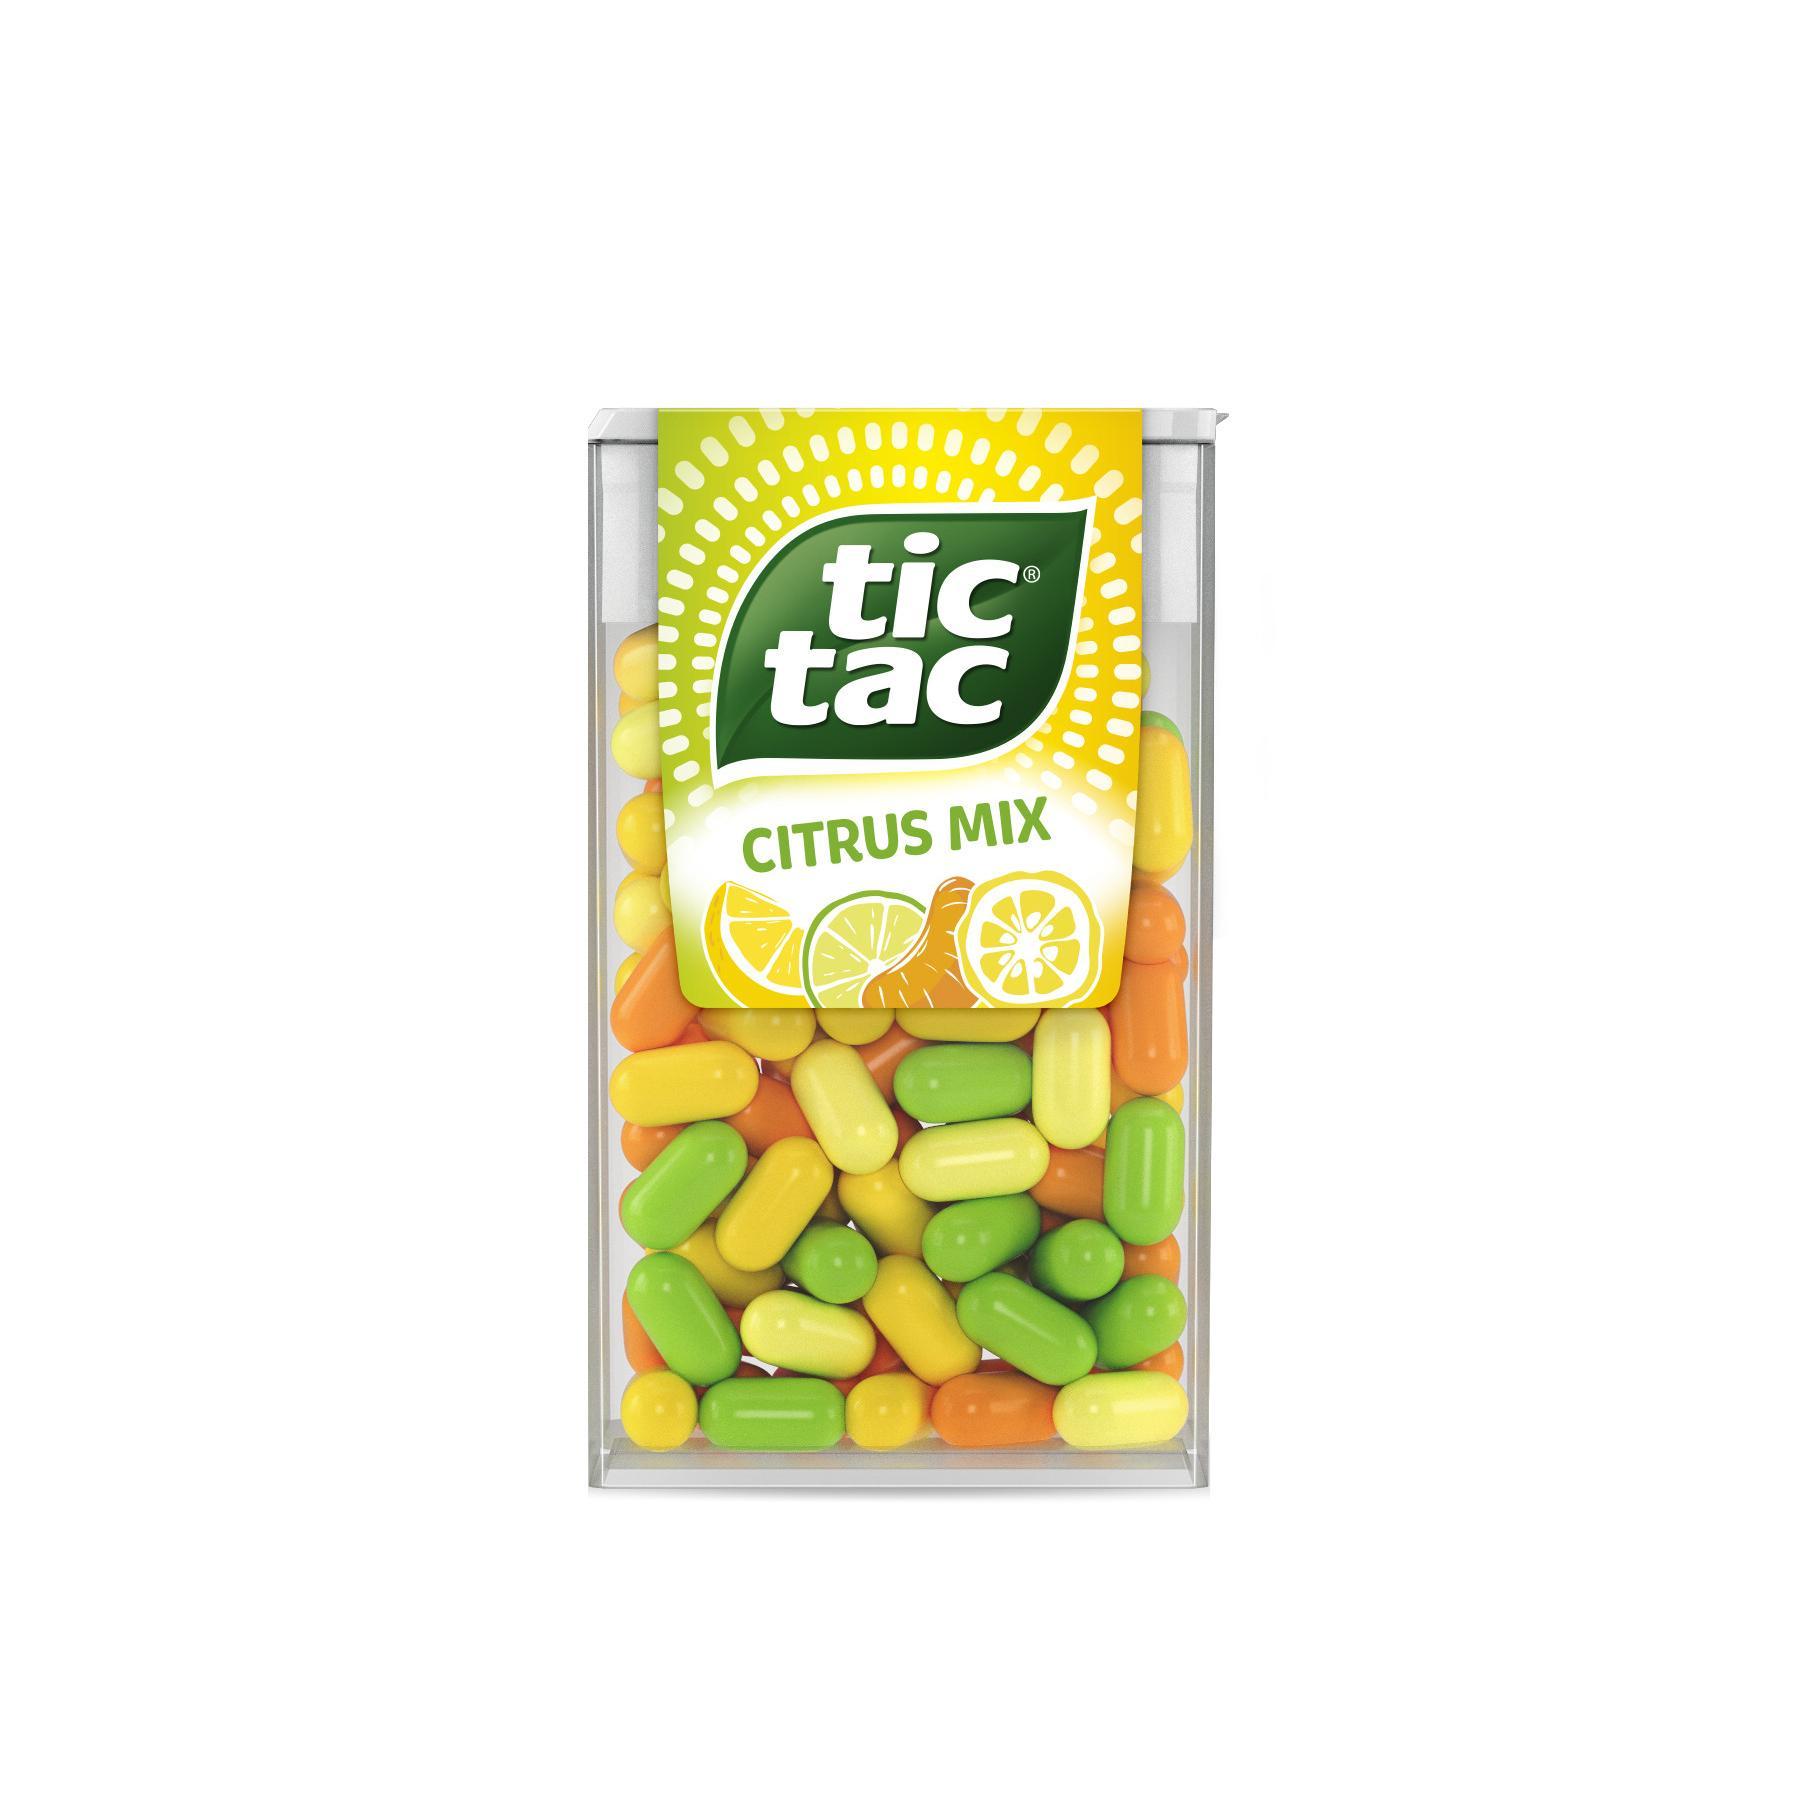 caramelle-tic-tac-citrus-mix-t100-49-gr